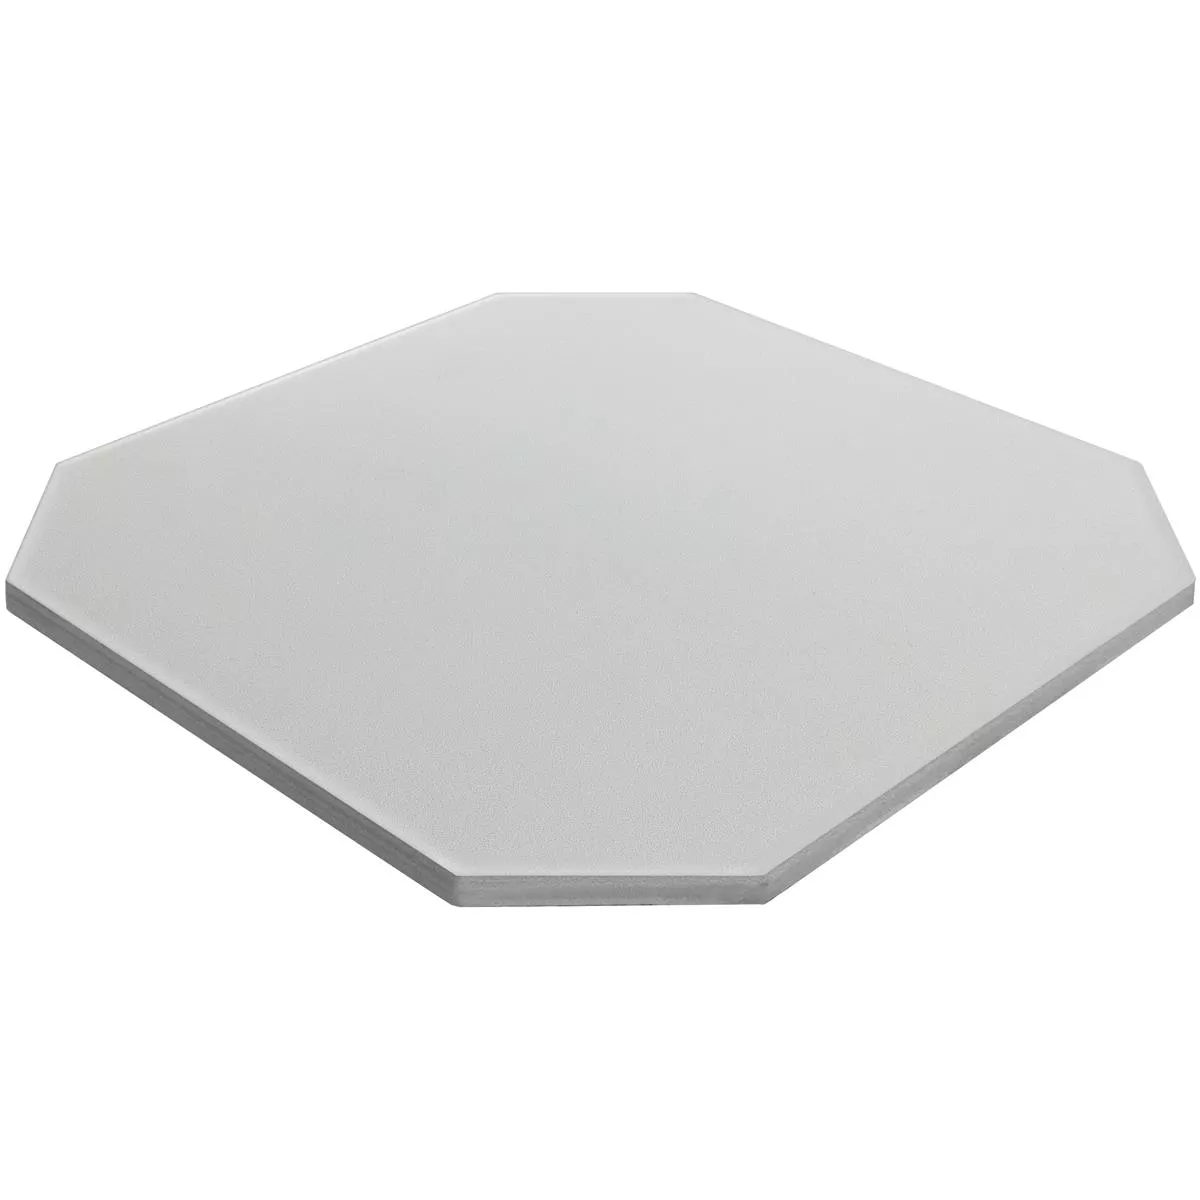 Sample Porcelain Stoneware Tiles Genexia Uni Creme Octagon 20x20cm